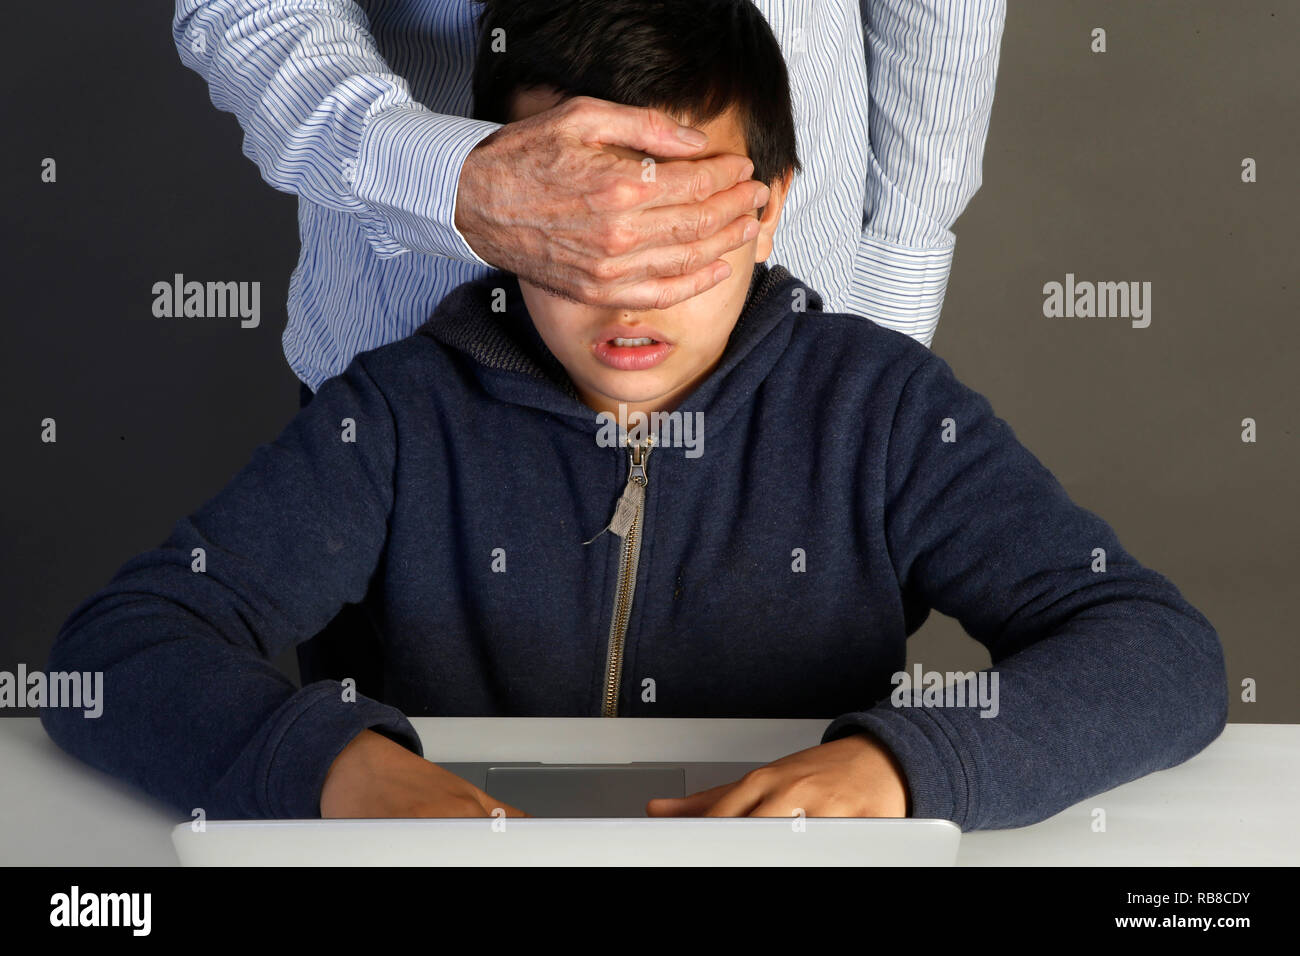 12-jähriger Junge verboten auf einer Website zu suchen. Paris, Frankreich. Stockfoto